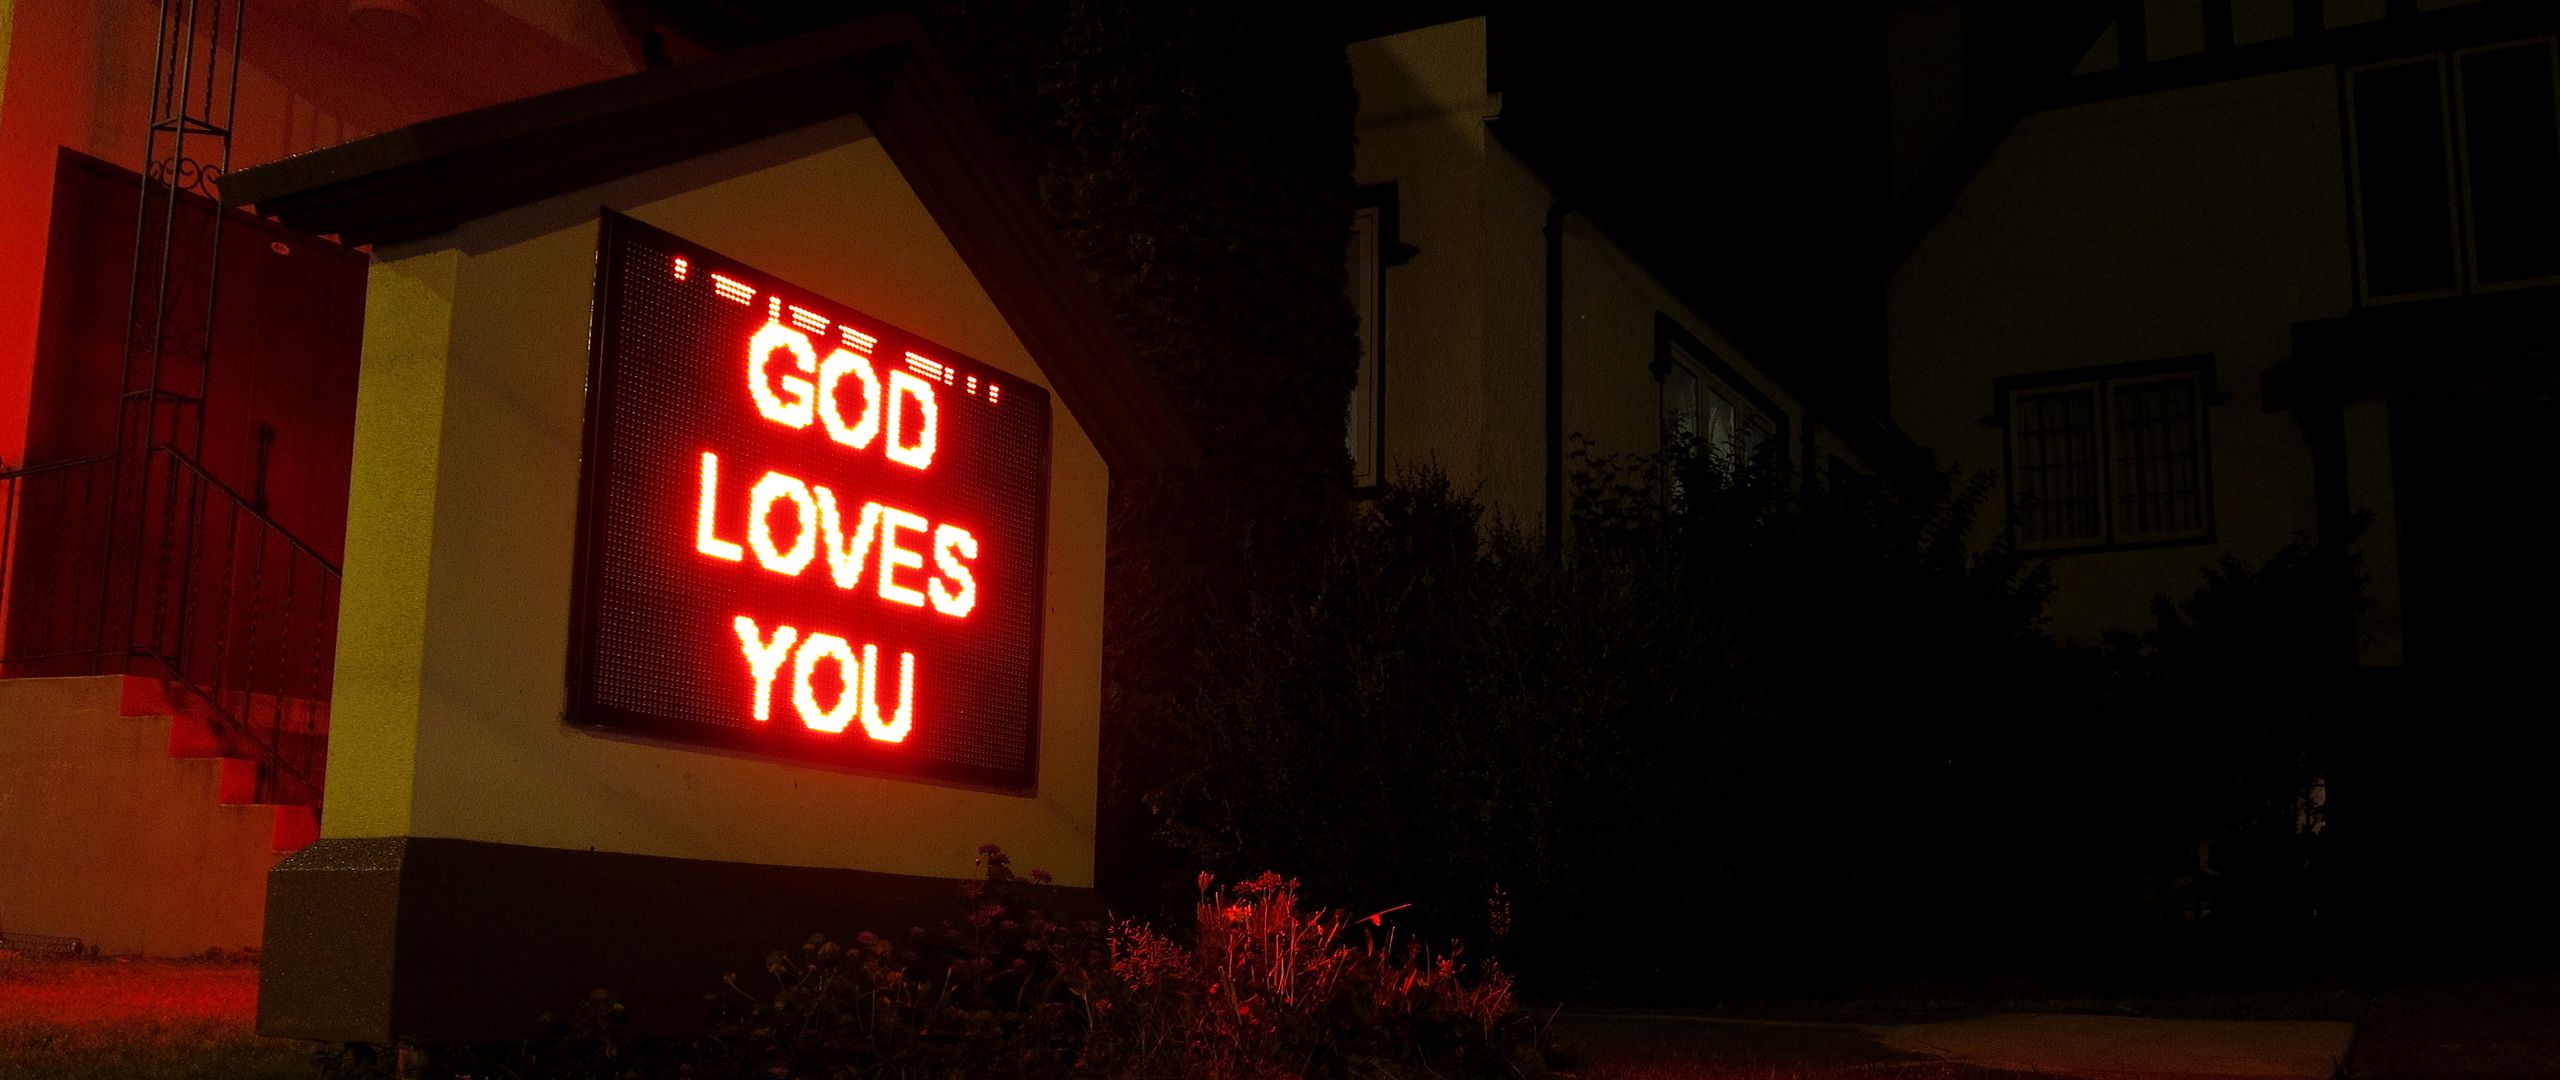 Wallpaper God loves you